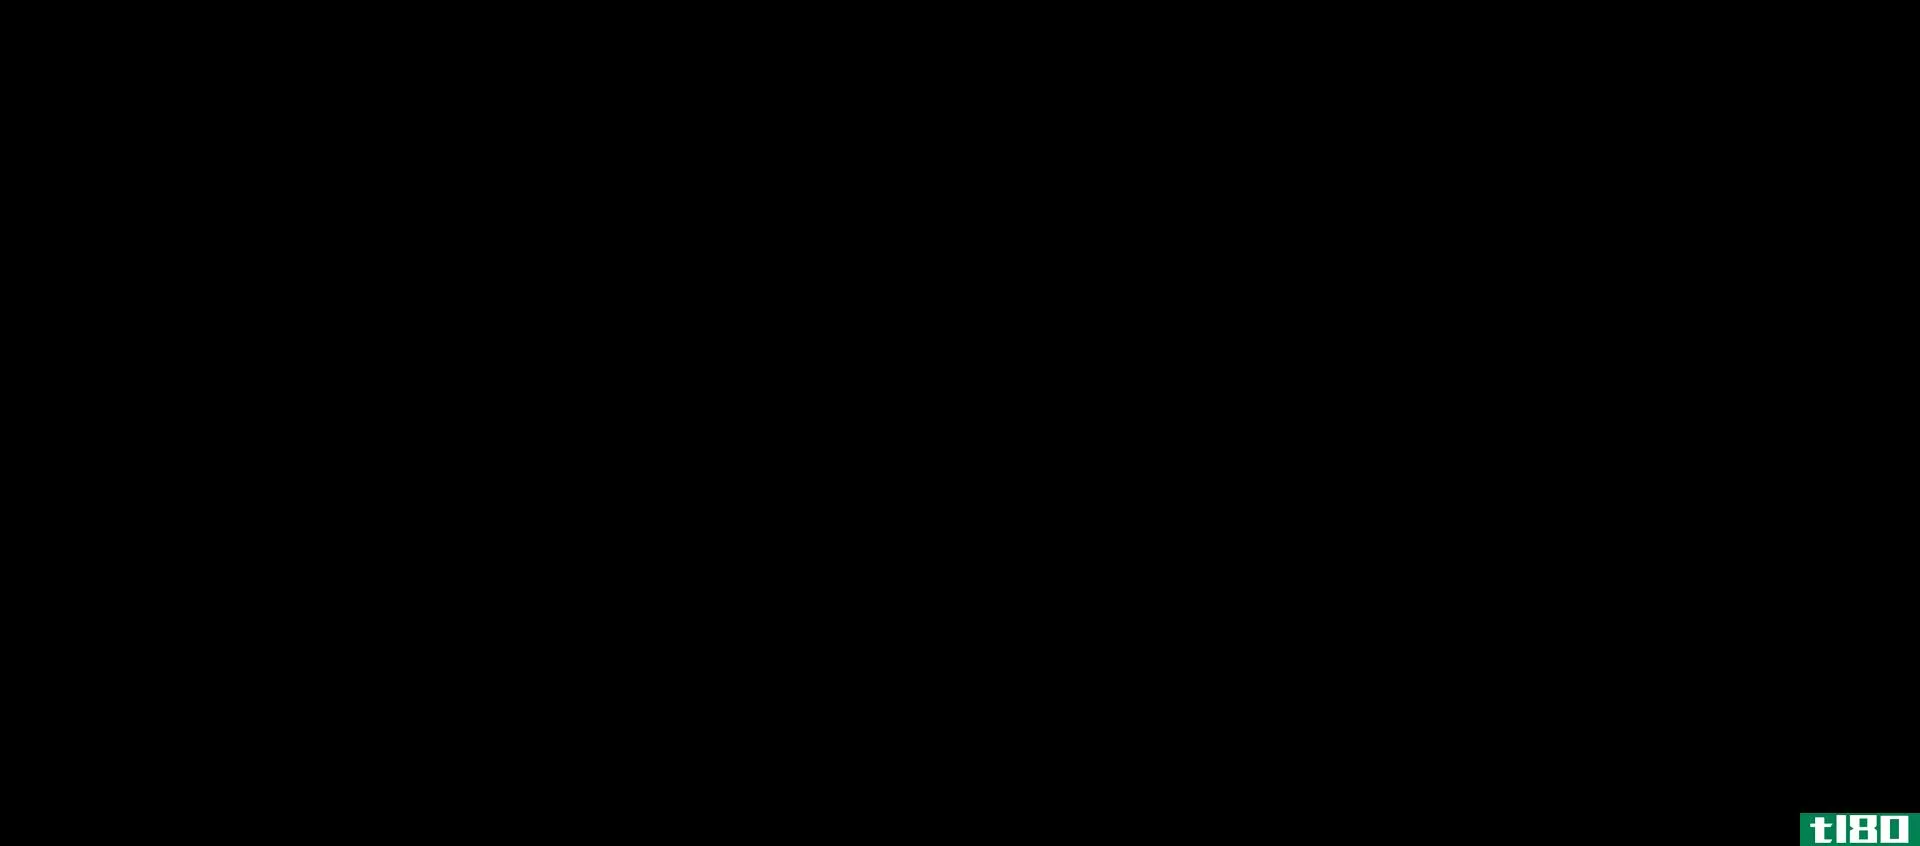 乙烯(ethylene)和亚乙基(ethylidene)的区别